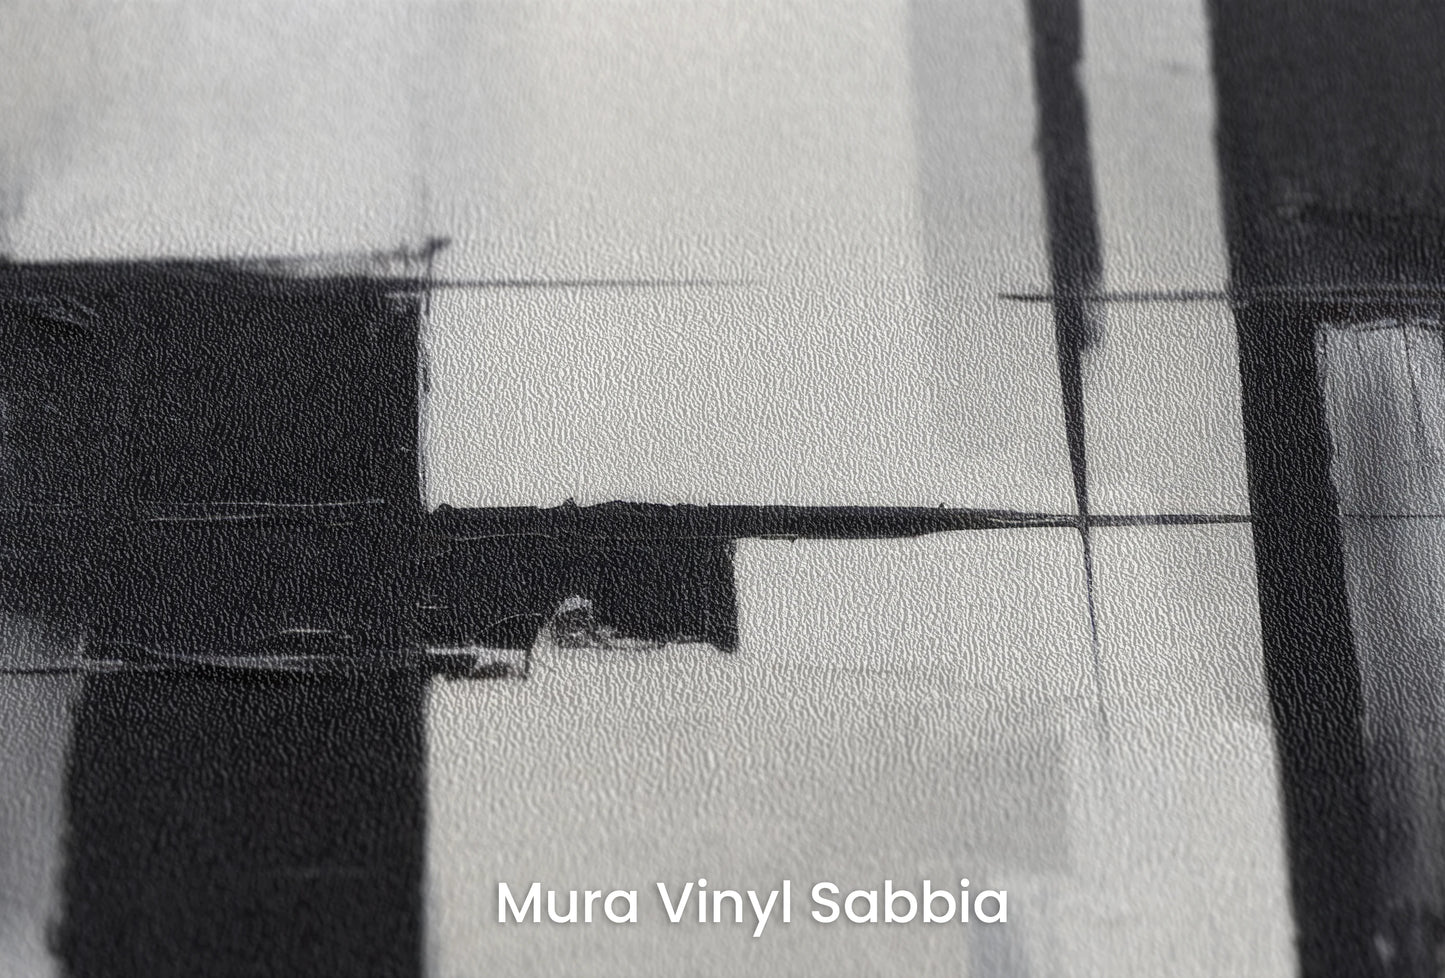 Zbliżenie na artystyczną fototapetę o nazwie Monochrome Reflection na podłożu Mura Vinyl Sabbia struktura grubego ziarna piasku.